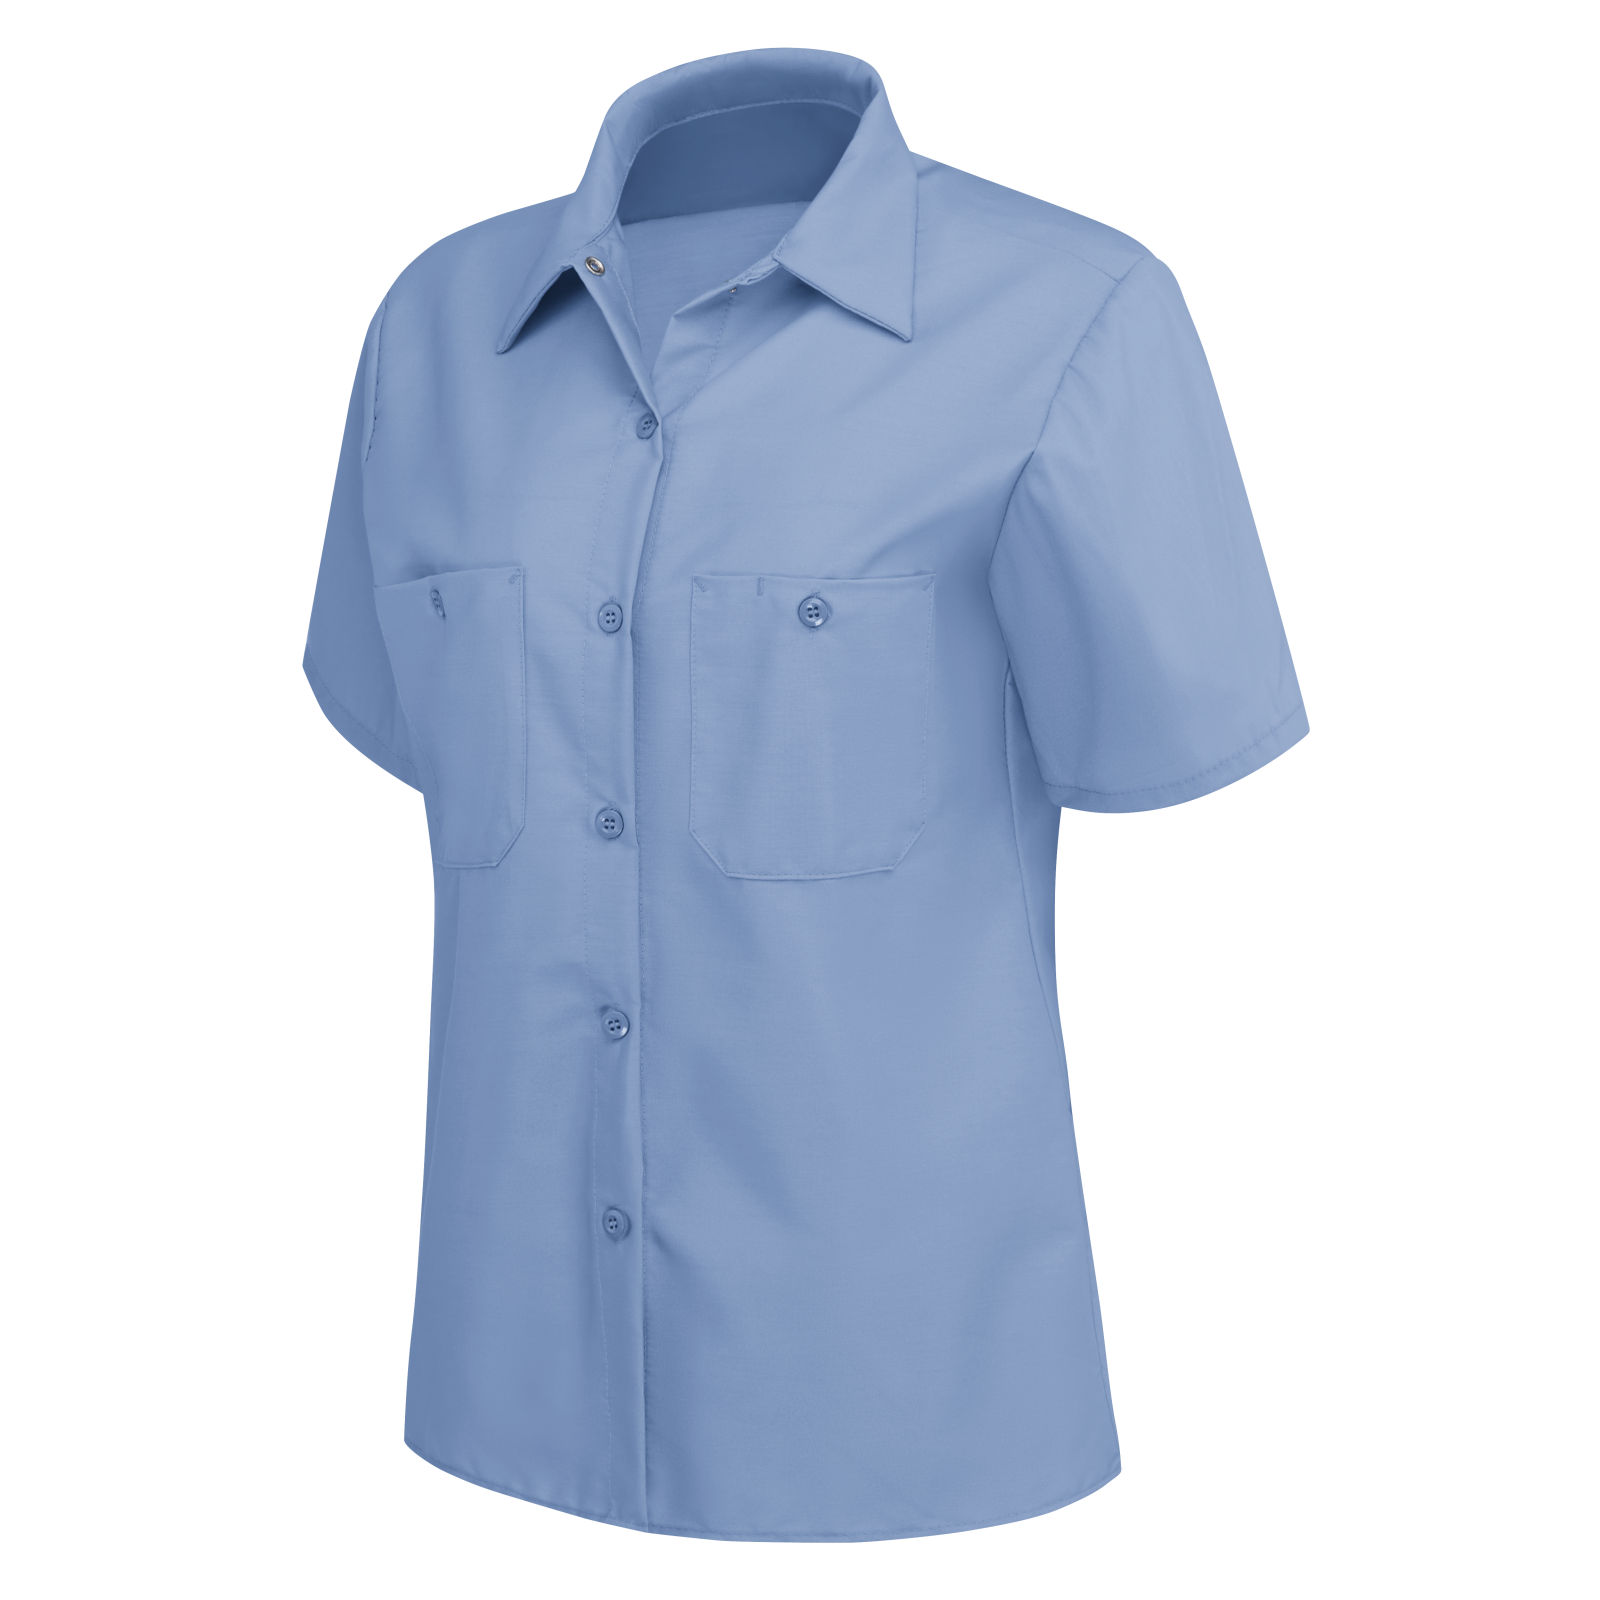 Women's Short Sleeve Industrial Work Shirt